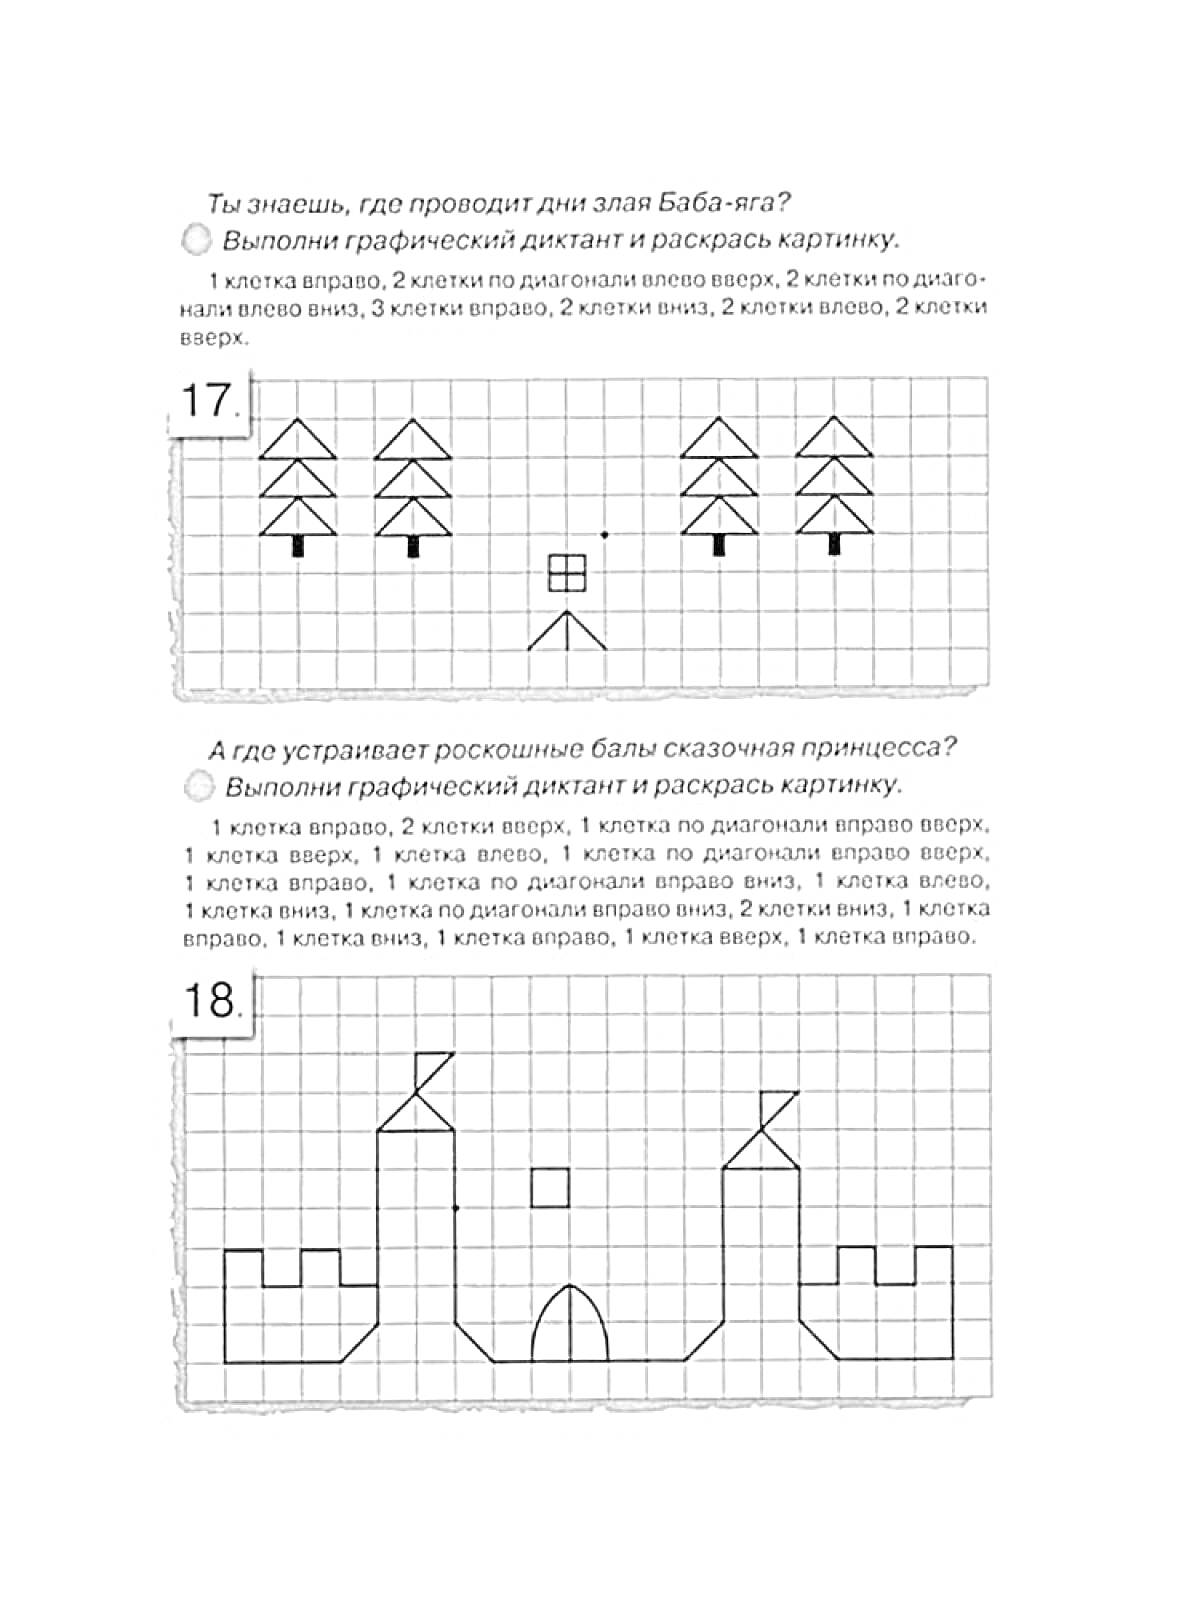 Раскраска Графический диктант для дошкольников - рисунки леса и дворца.